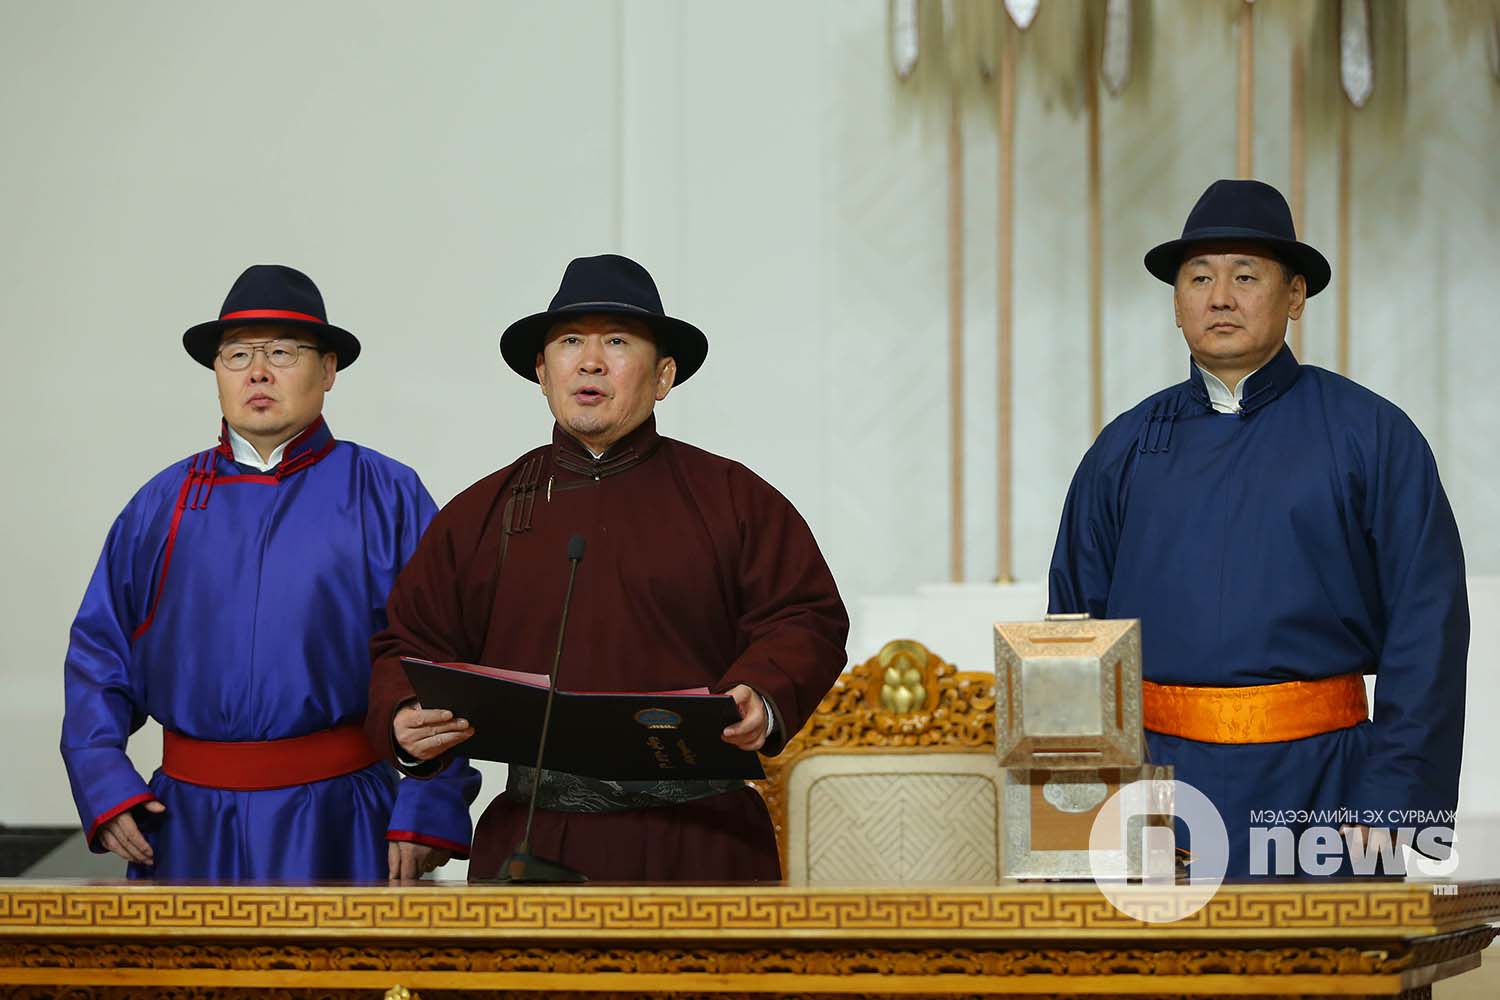 Монгол Улсын Үндсэн хуульд нэмэлт, өөрчлөлт оруулах эхийг баталгаажуулах ёслол